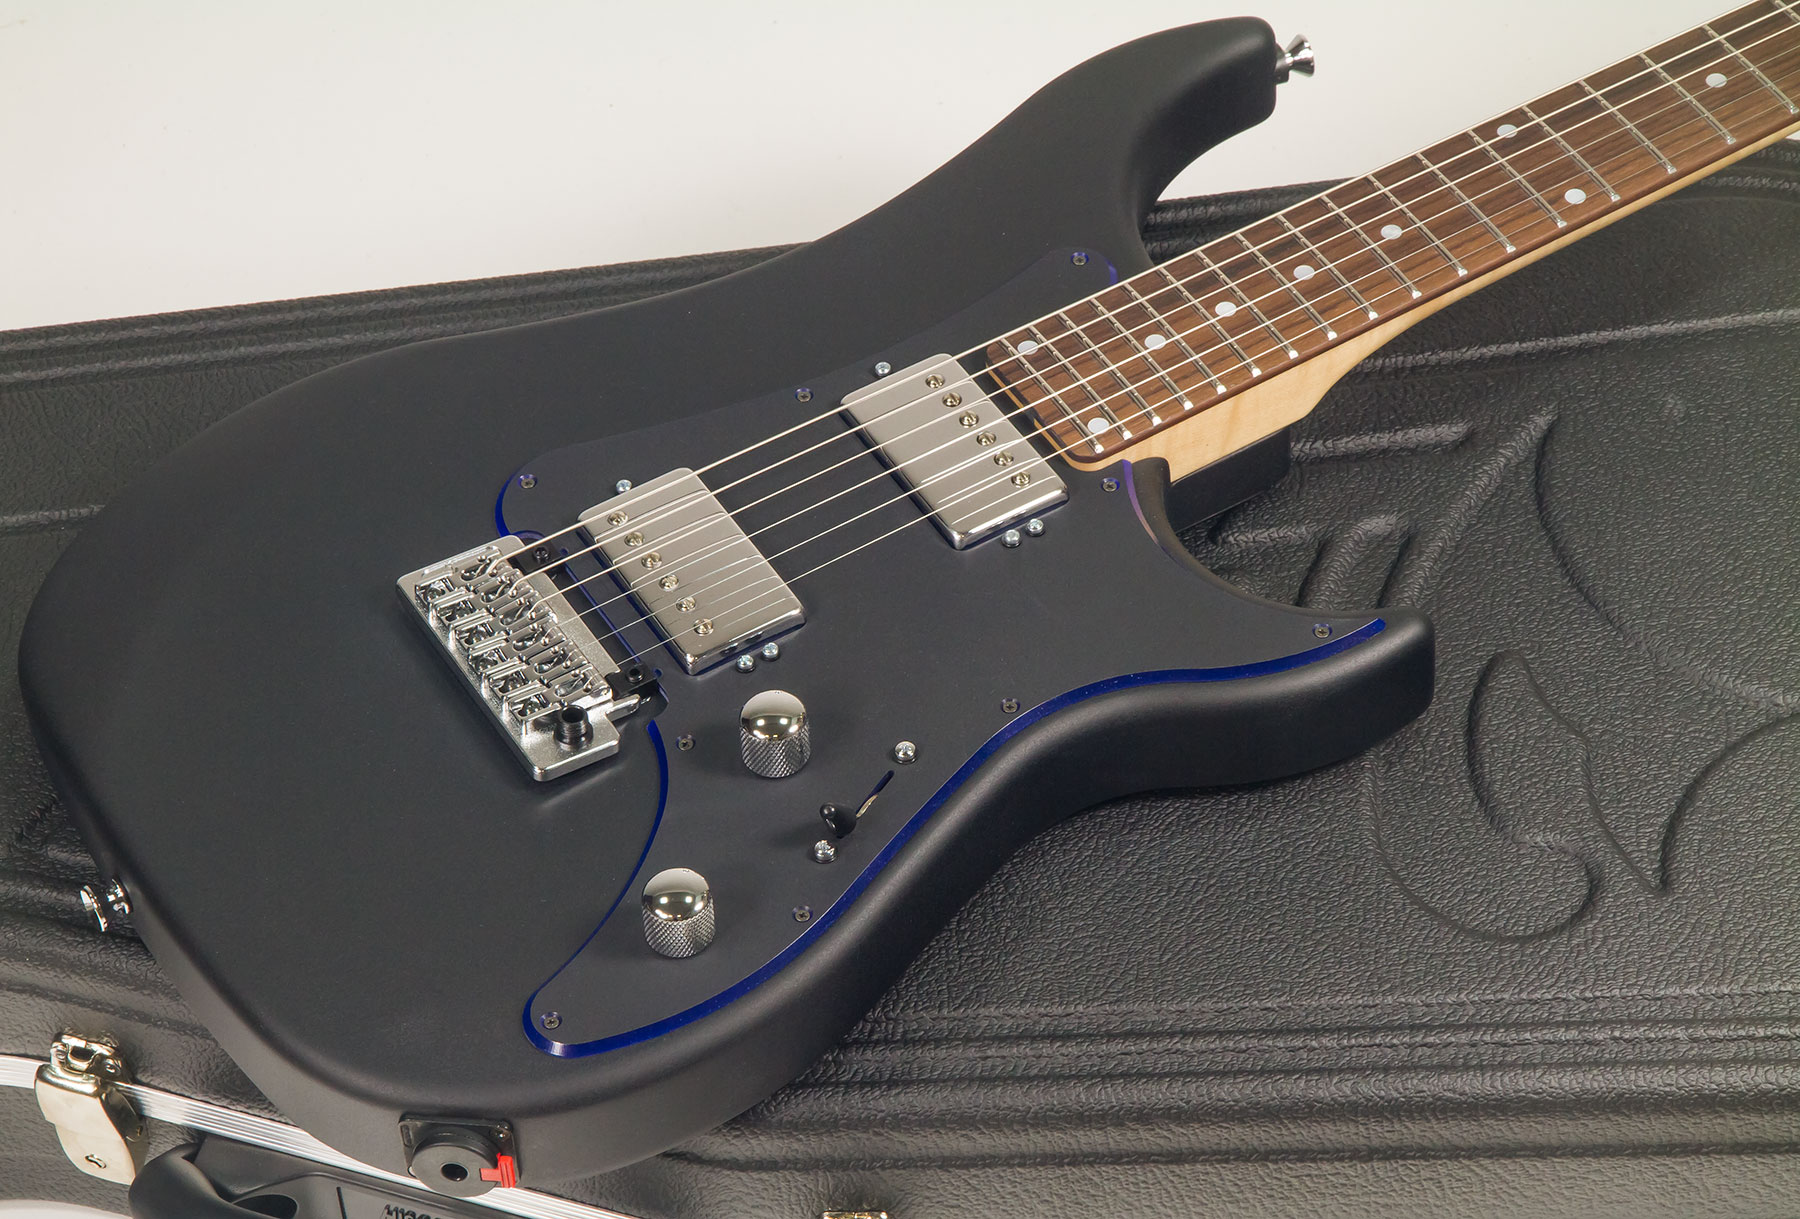 Vigier Excalibur Indus Hh Trem Rw - Textured Black - Guitarra eléctrica de doble corte. - Variation 1